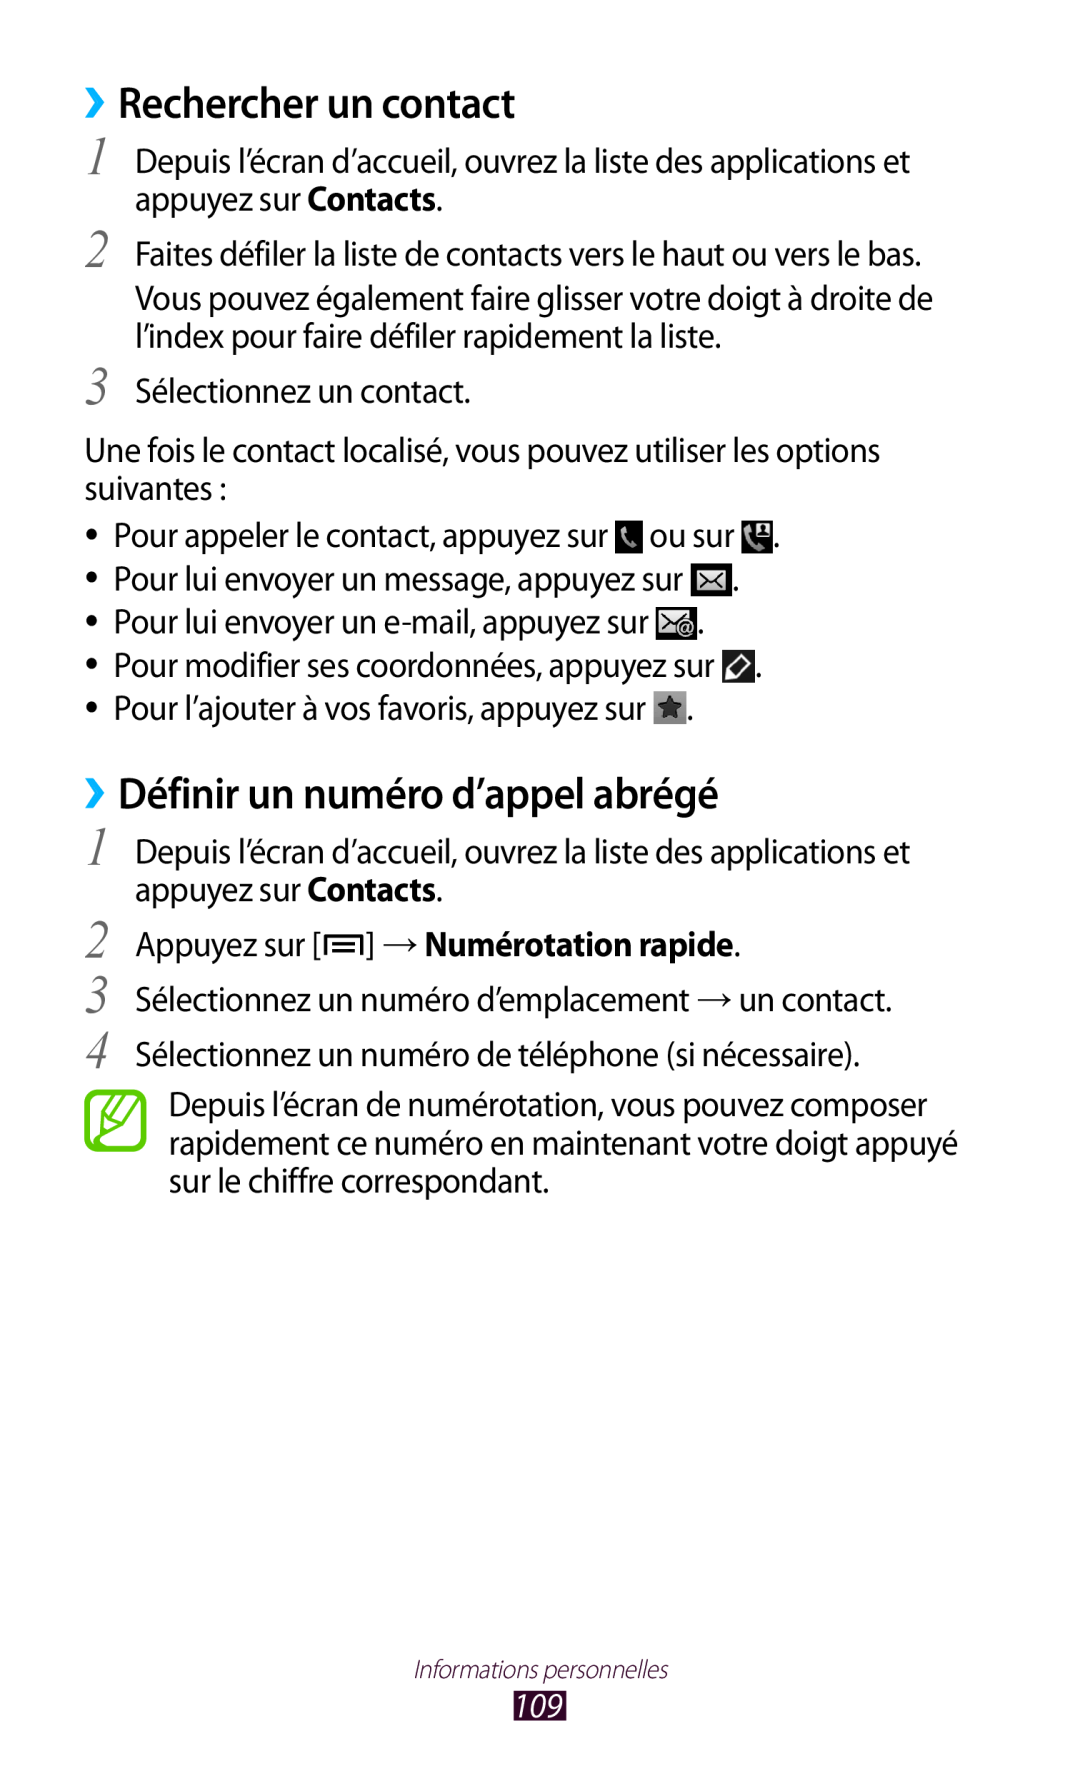 Samsung GT-N7000ZIEXEF ››Rechercher un contact, ››Définir un numéro d’appel abrégé, Appuyez sur → Numérotation rapide 